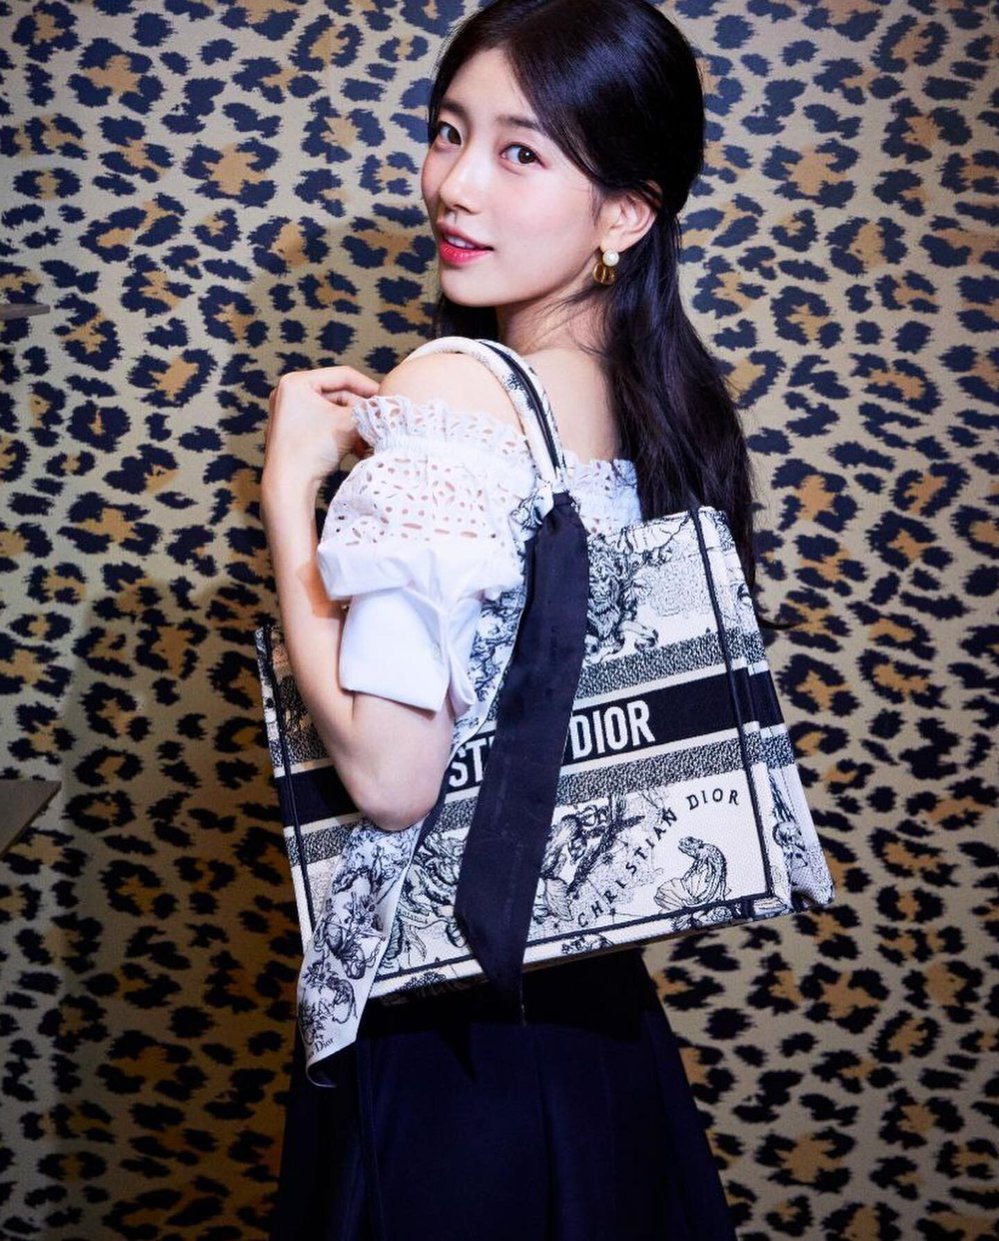  
Suzy rạng rỡ bên chiếc túi của Dior. (Ảnh: INGV)